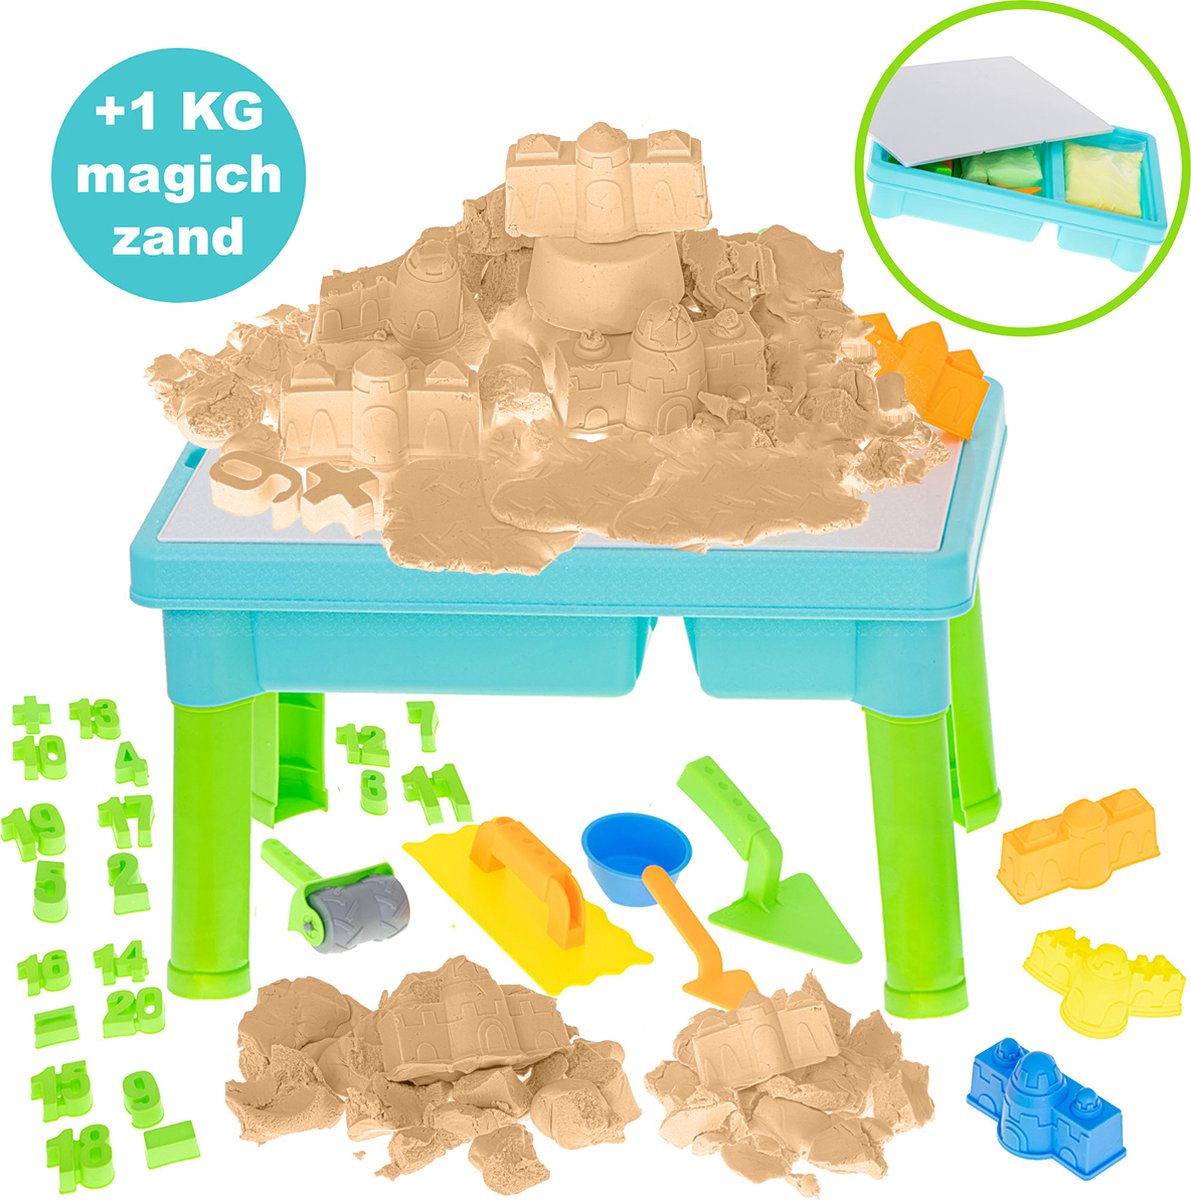 Kinetisch speelzand - Zandtafel en watertafel - Watertafel speelgoed - Tekentafel - Kinetic sand - Kinetisch zand speelgoed - 1 kg - Incl. magisch zand en vormpjes